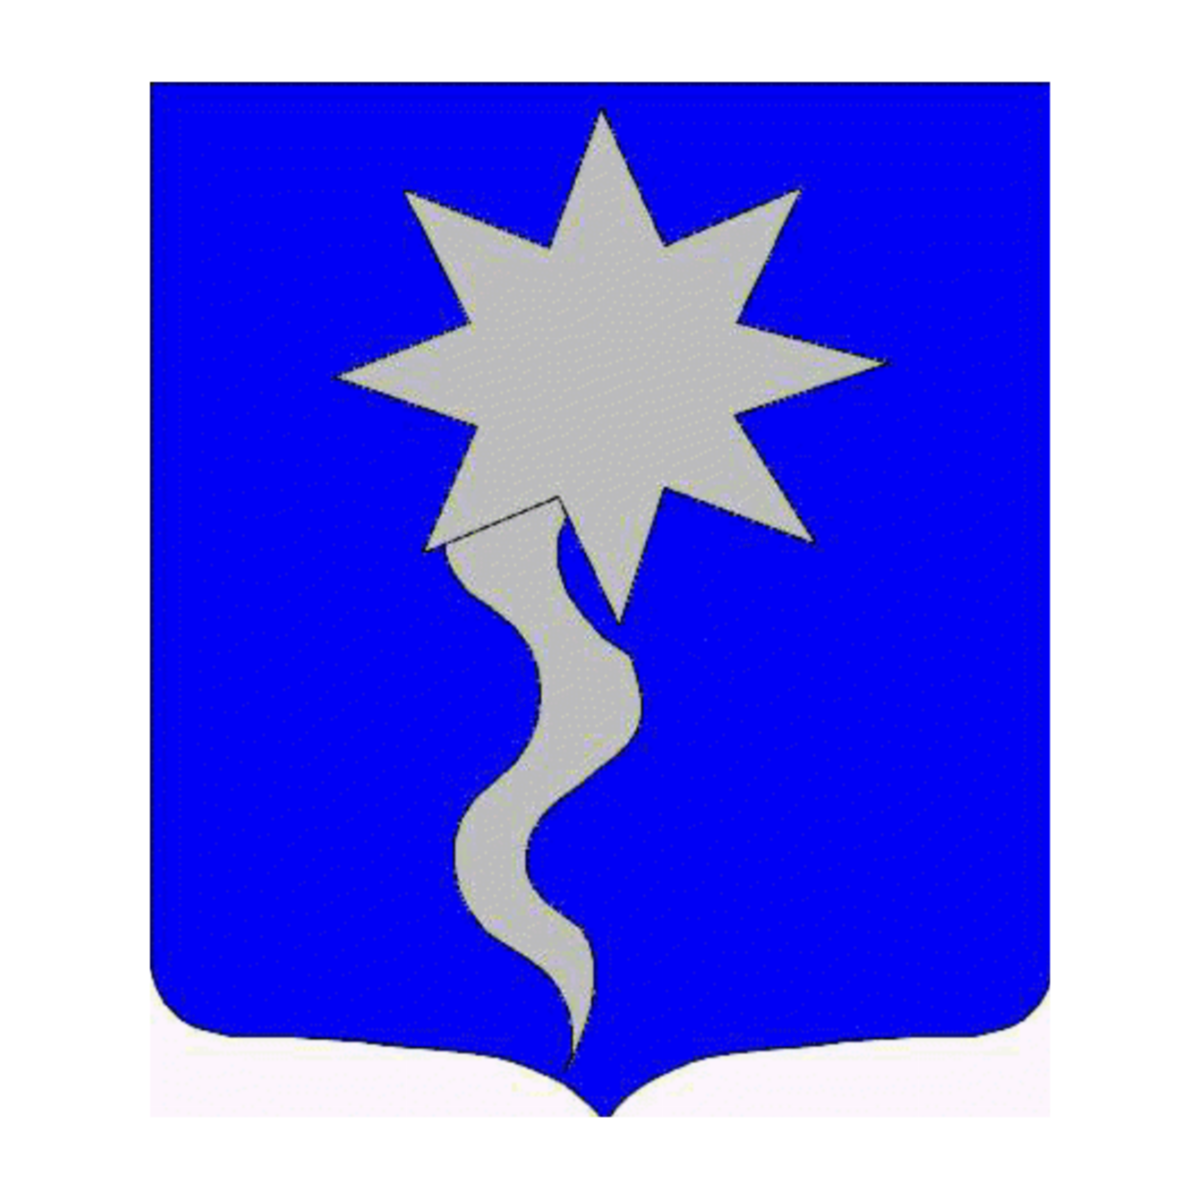 Wappen der Familie Bellicani